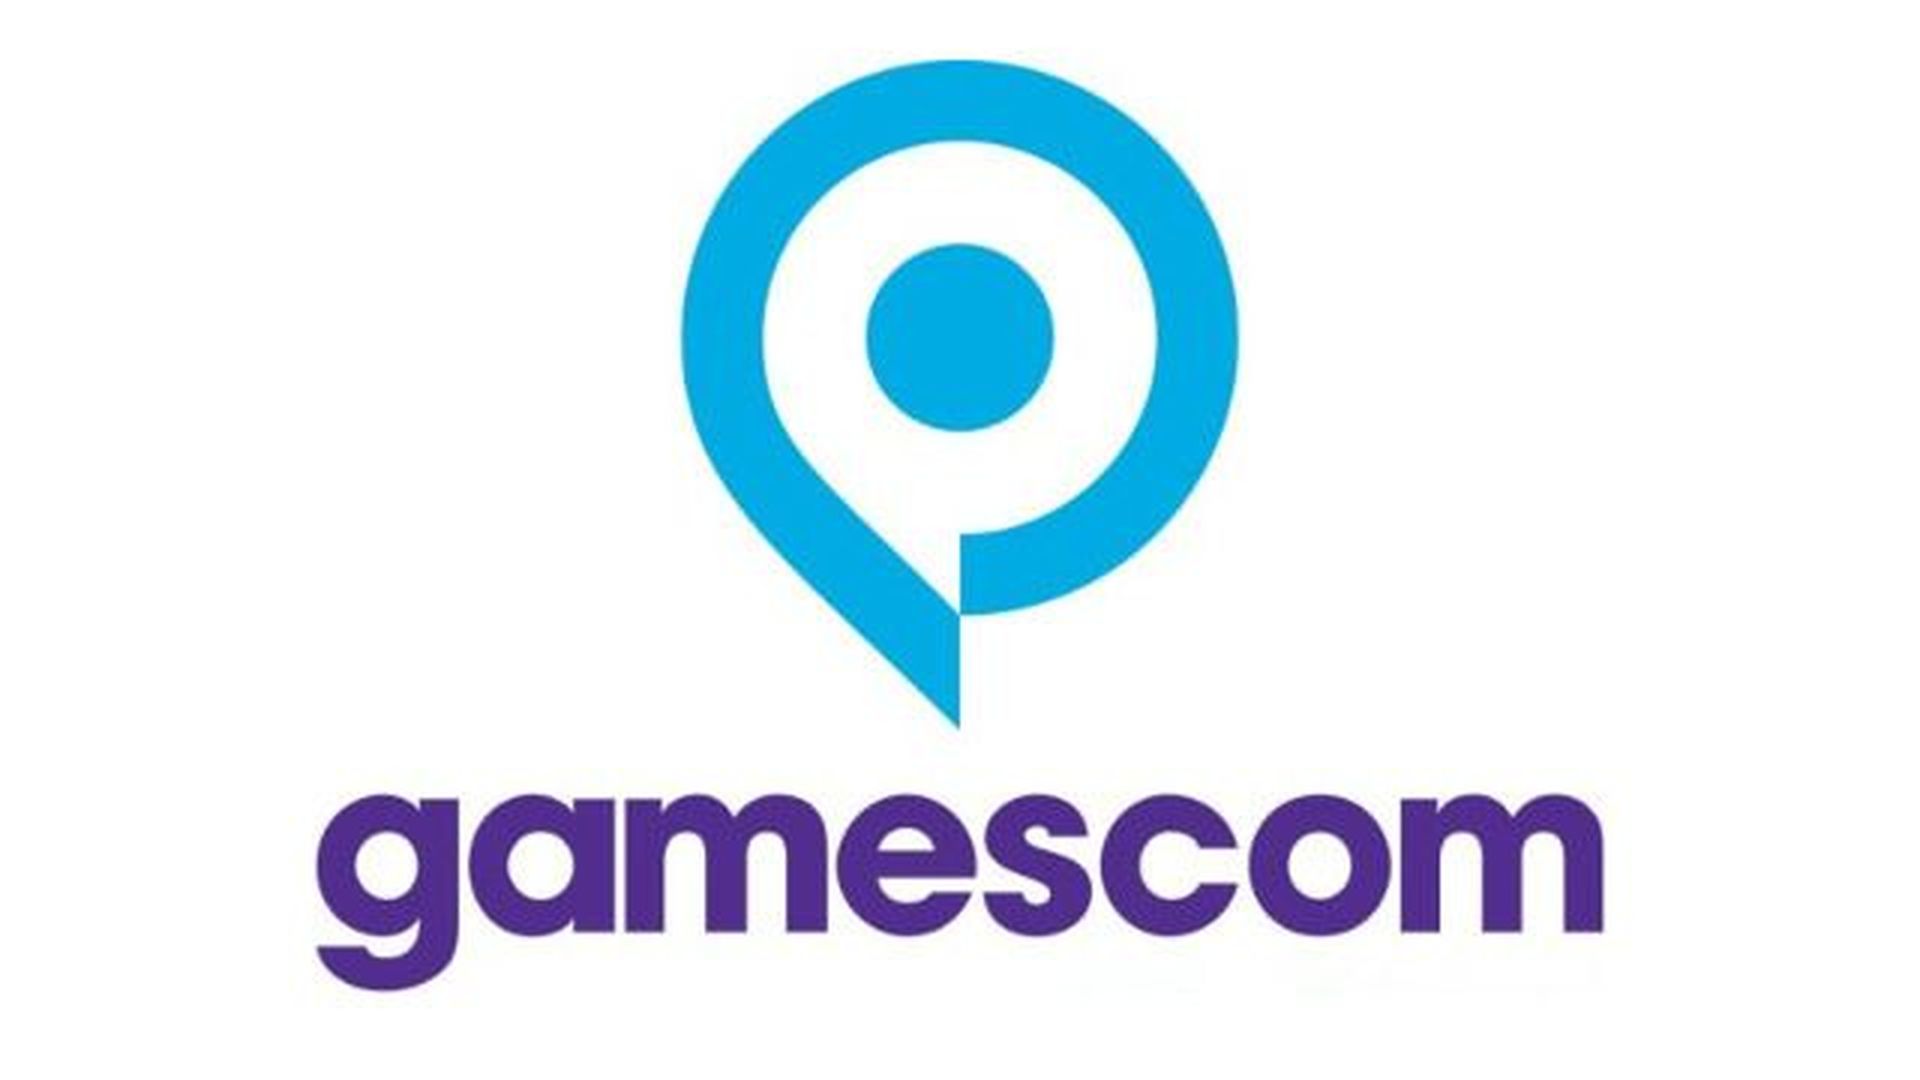 Gamescom 2020: confira mais informações sobre o evento online | ec044098 4fd1 40b8 80b3 0d5c29020442 gamescom | gamescom | gamescom 2020 gamescom